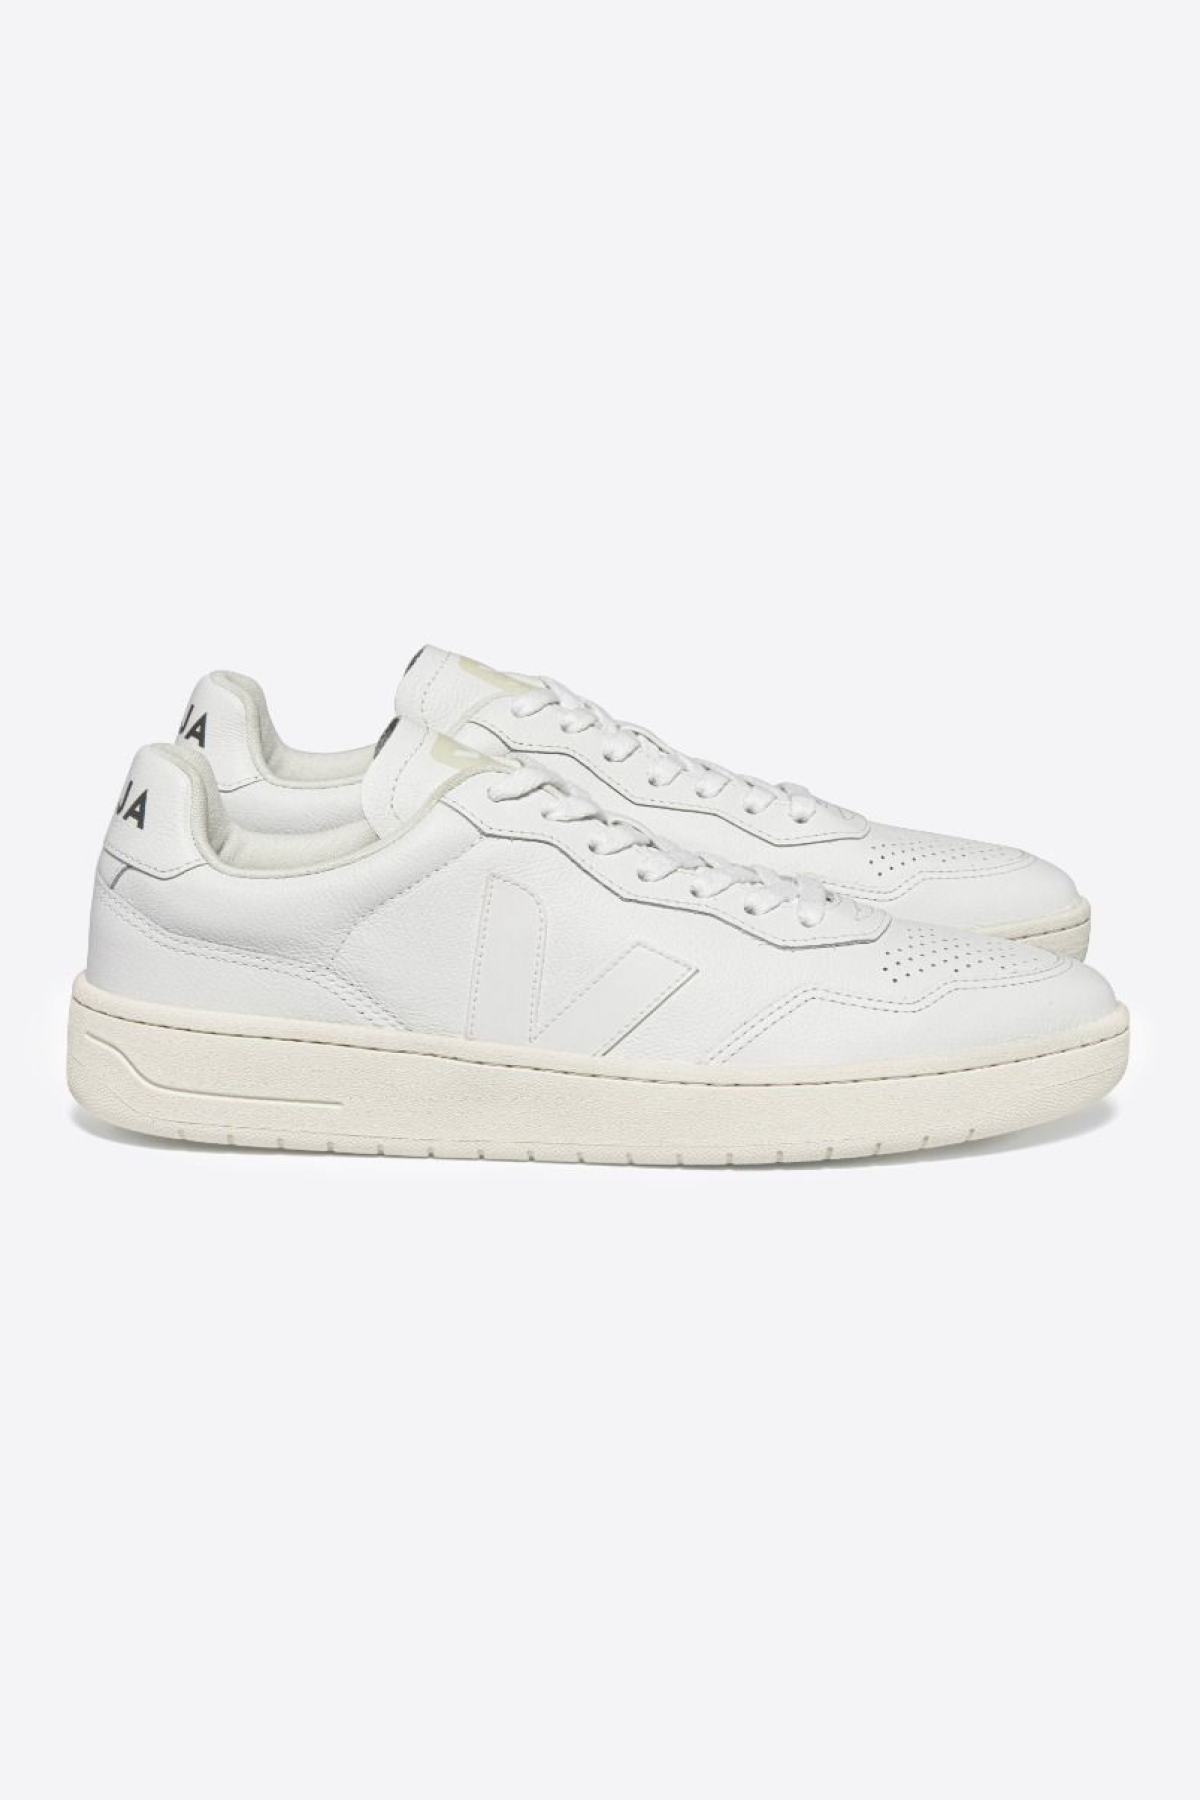 Veja  Mens V-90 O.T. Leather Sneakers - White/White